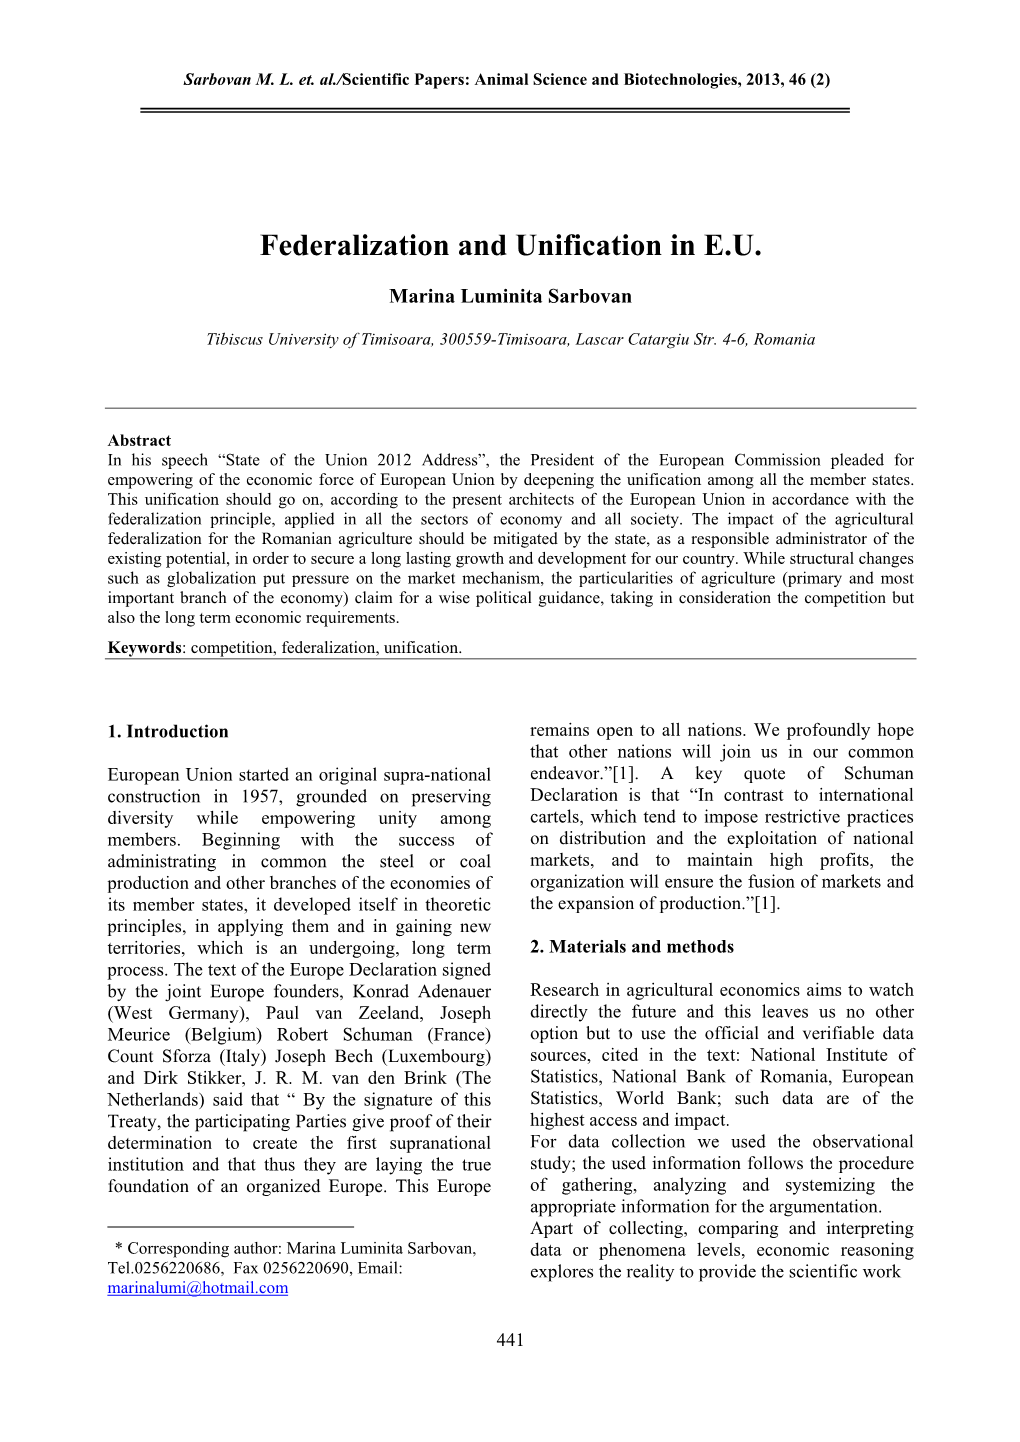 Federalization and Unification in E.U